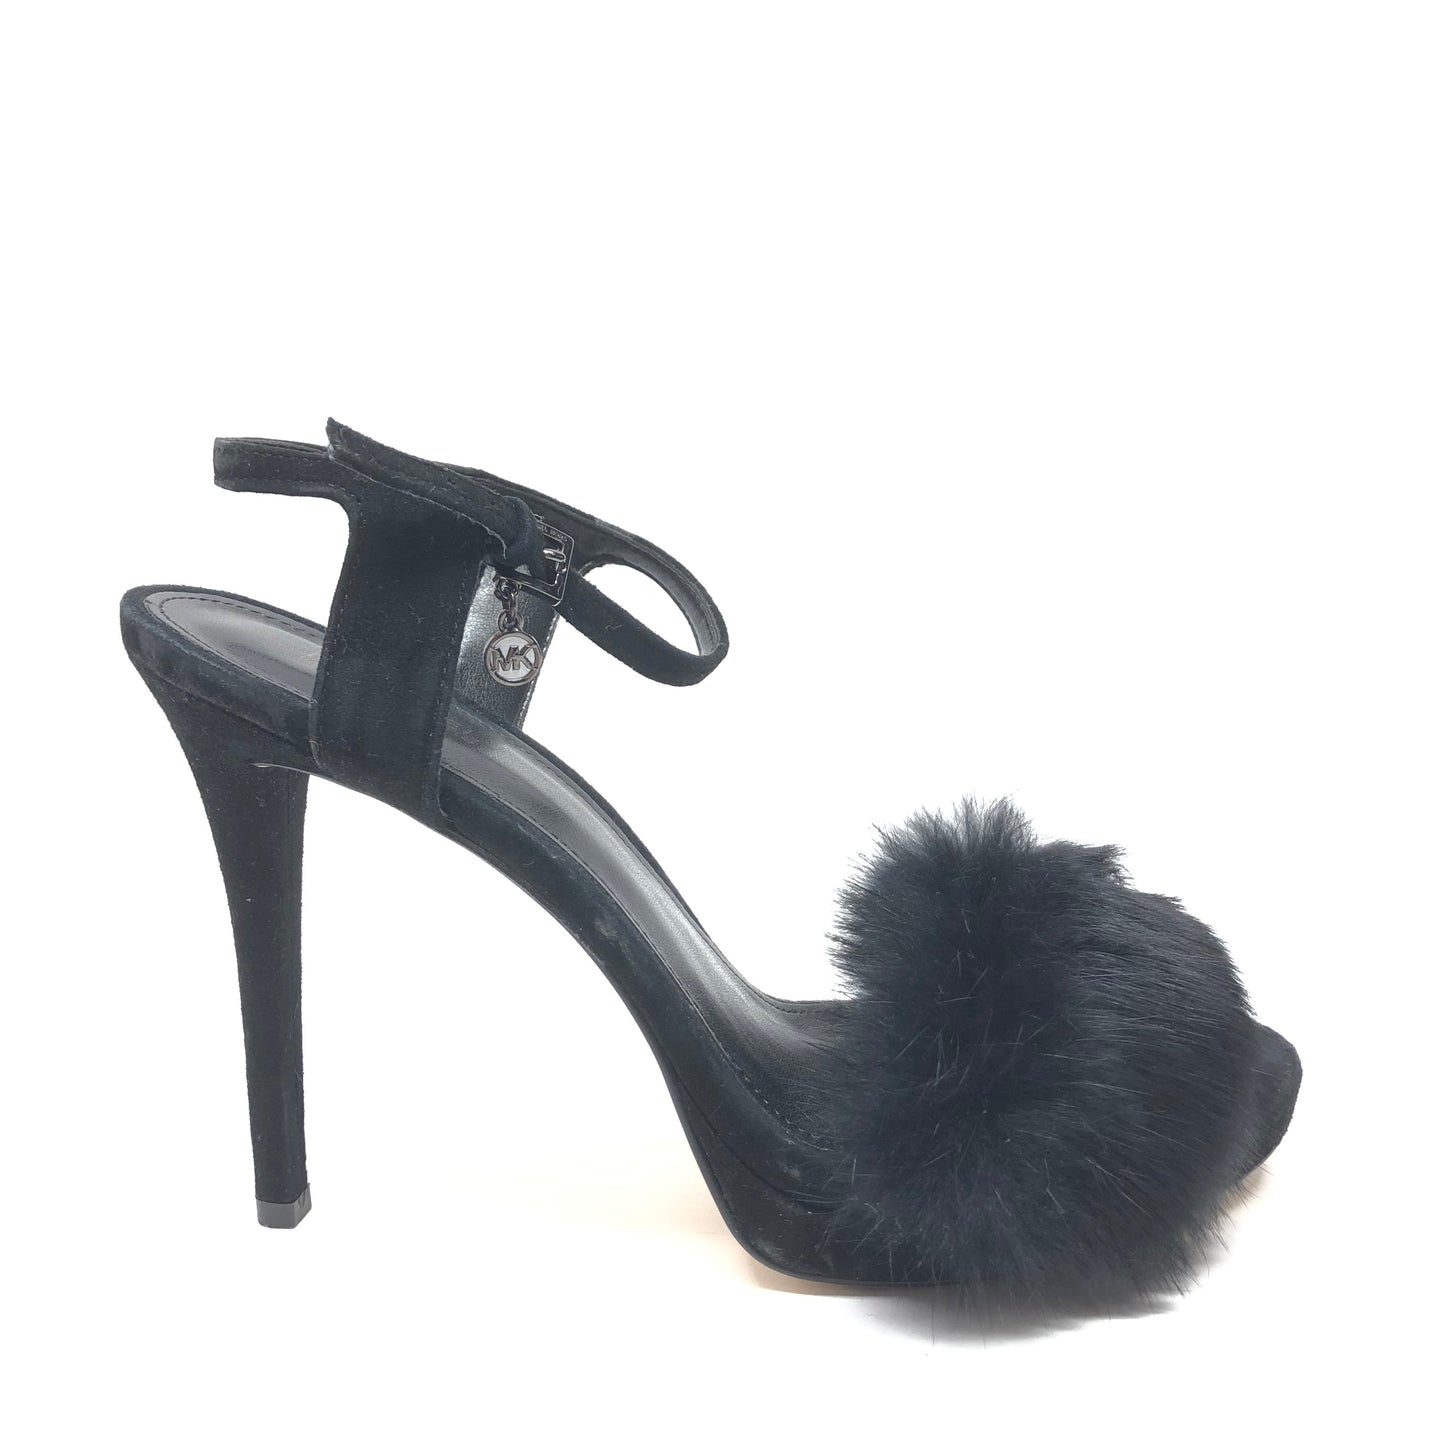 Black Shoes Heels Stiletto Michael Kors, Size 7